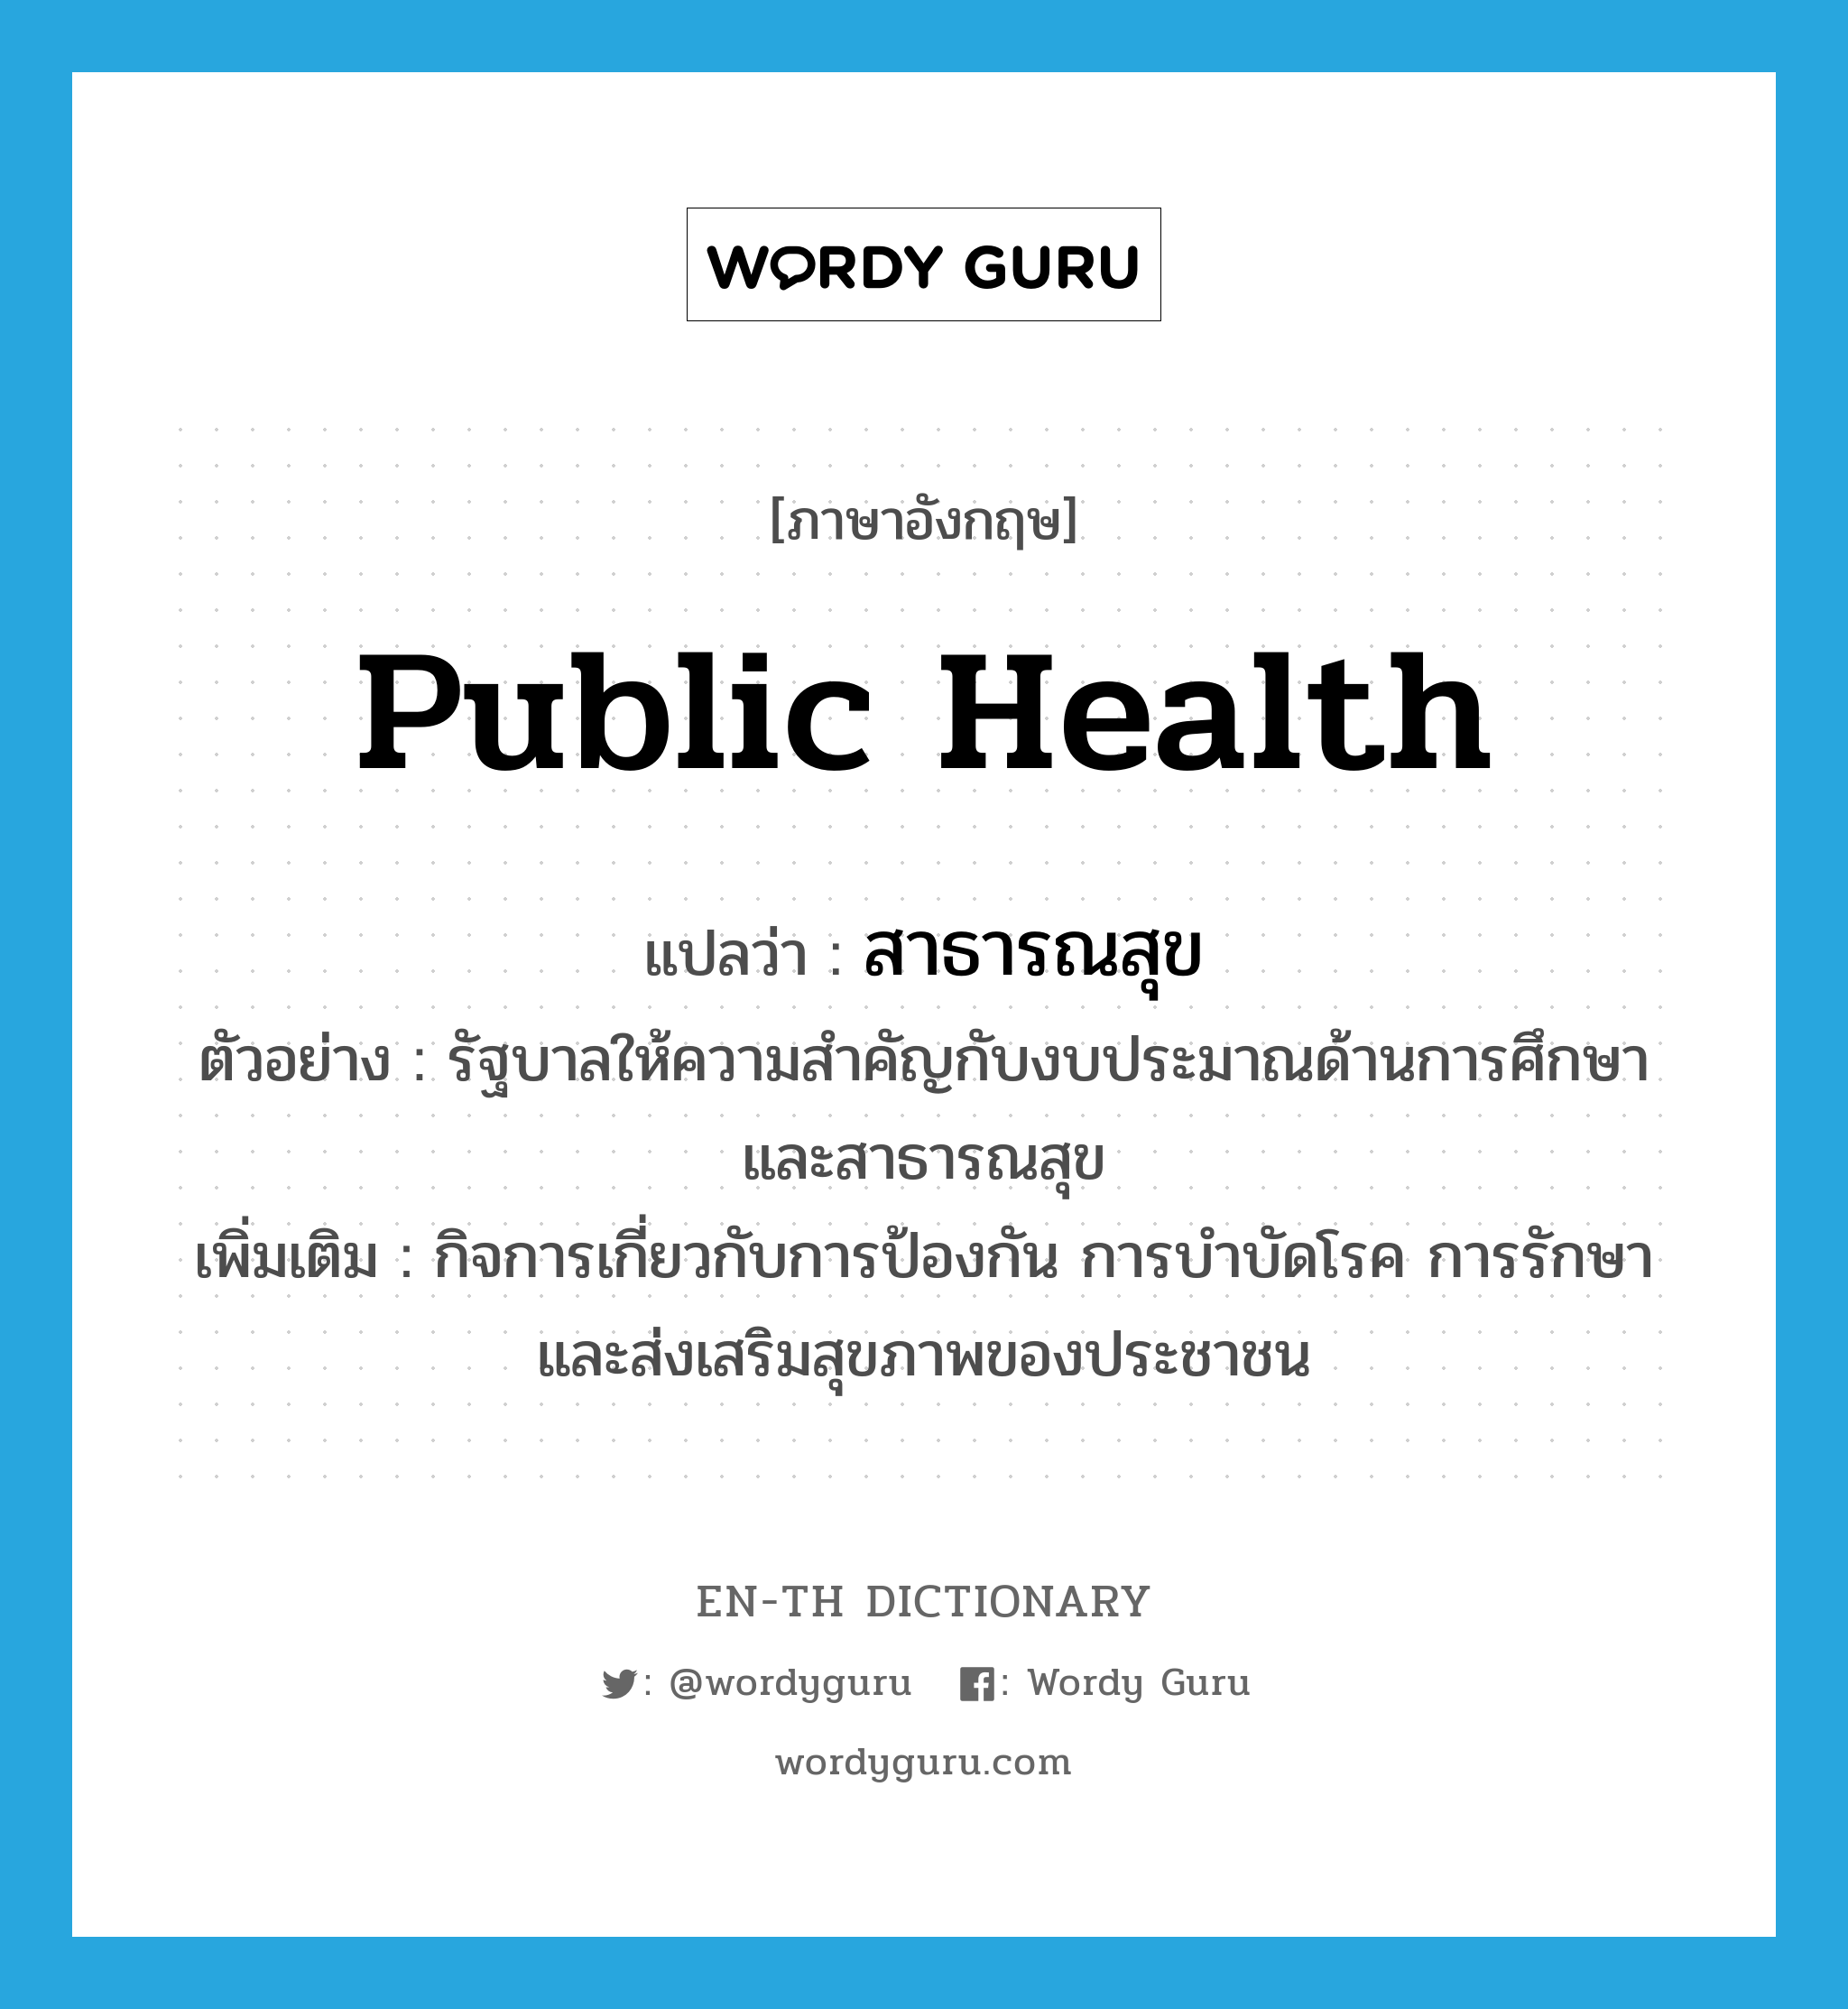 public health แปลว่า?, คำศัพท์ภาษาอังกฤษ public health แปลว่า สาธารณสุข ประเภท N ตัวอย่าง รัฐบาลให้ความสำคัญกับงบประมาณด้านการศึกษาและสาธารณสุข เพิ่มเติม กิจการเกี่ยวกับการป้องกัน การบำบัดโรค การรักษา และส่งเสริมสุขภาพของประชาชน หมวด N